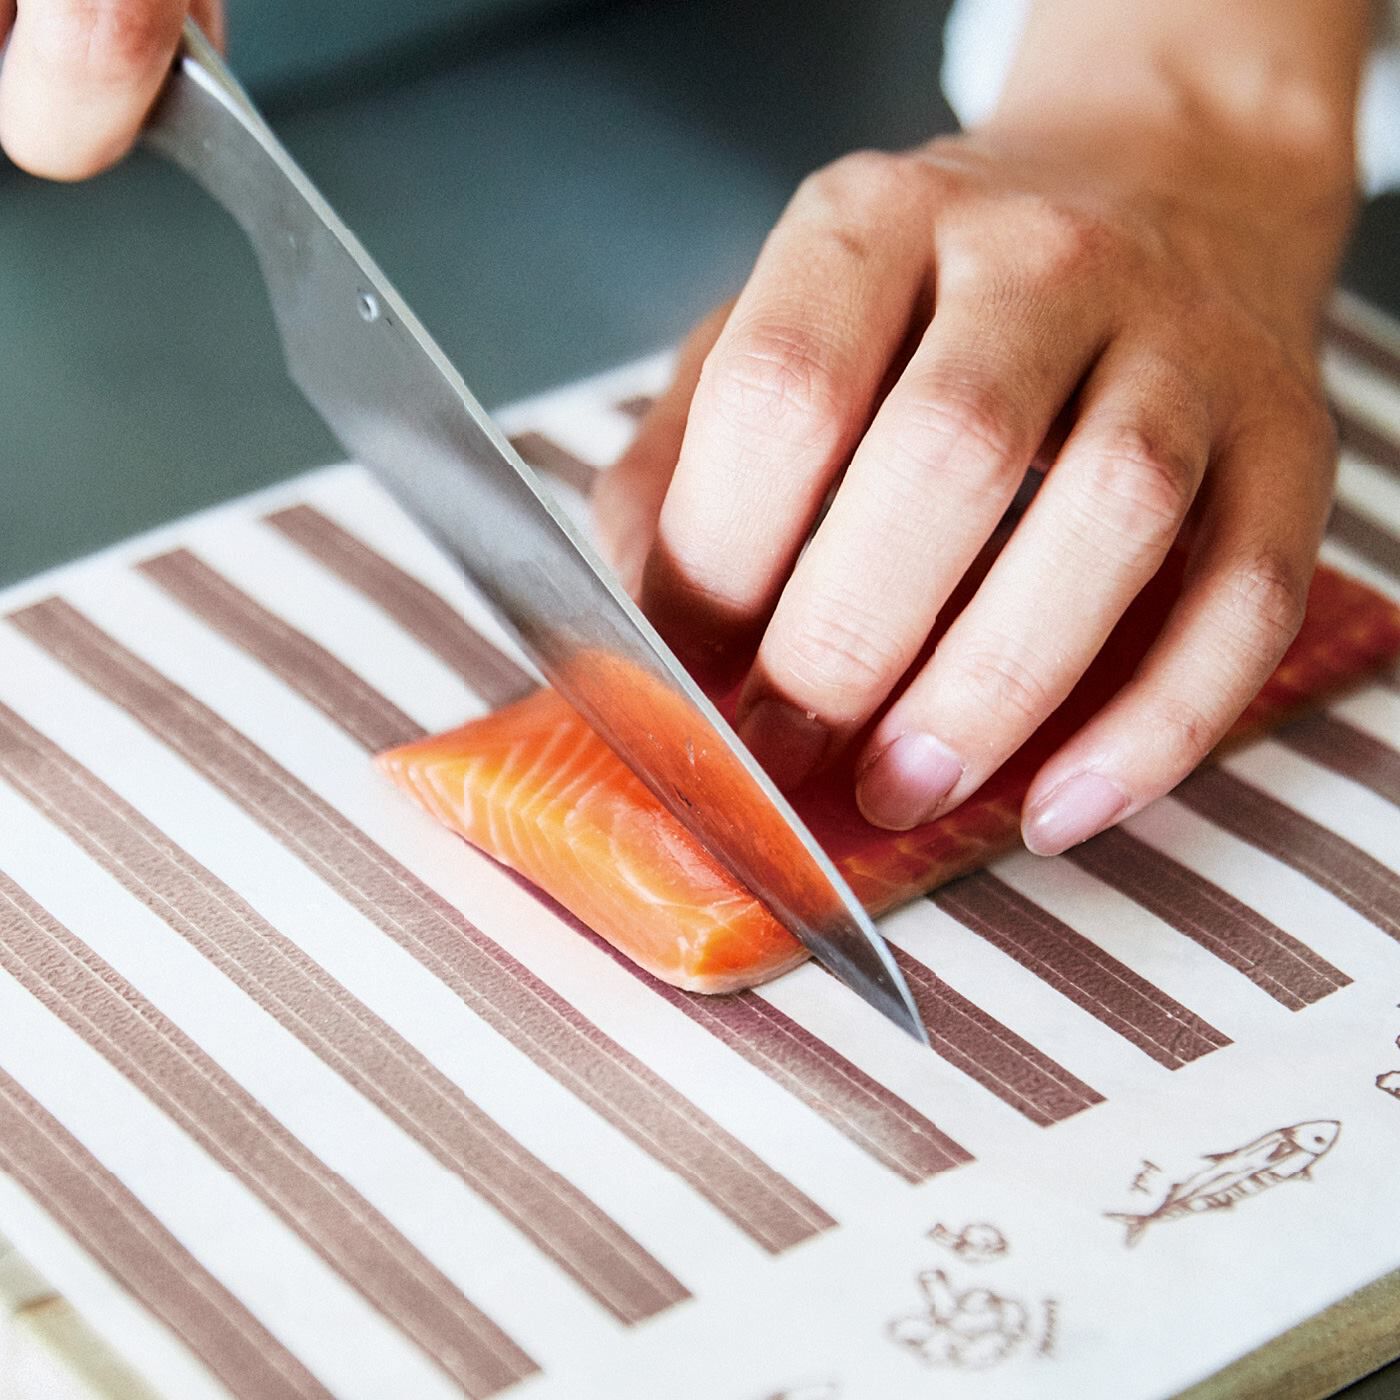 フェリシモの雑貨 Kraso|エスキューブキッチンズ　使いたい分だけカットOK 汚れ＆におい移りを防ぐ ロールまな板シートの会|約1cm間隔のパターン柄は食材を切るときの幅の目安に。